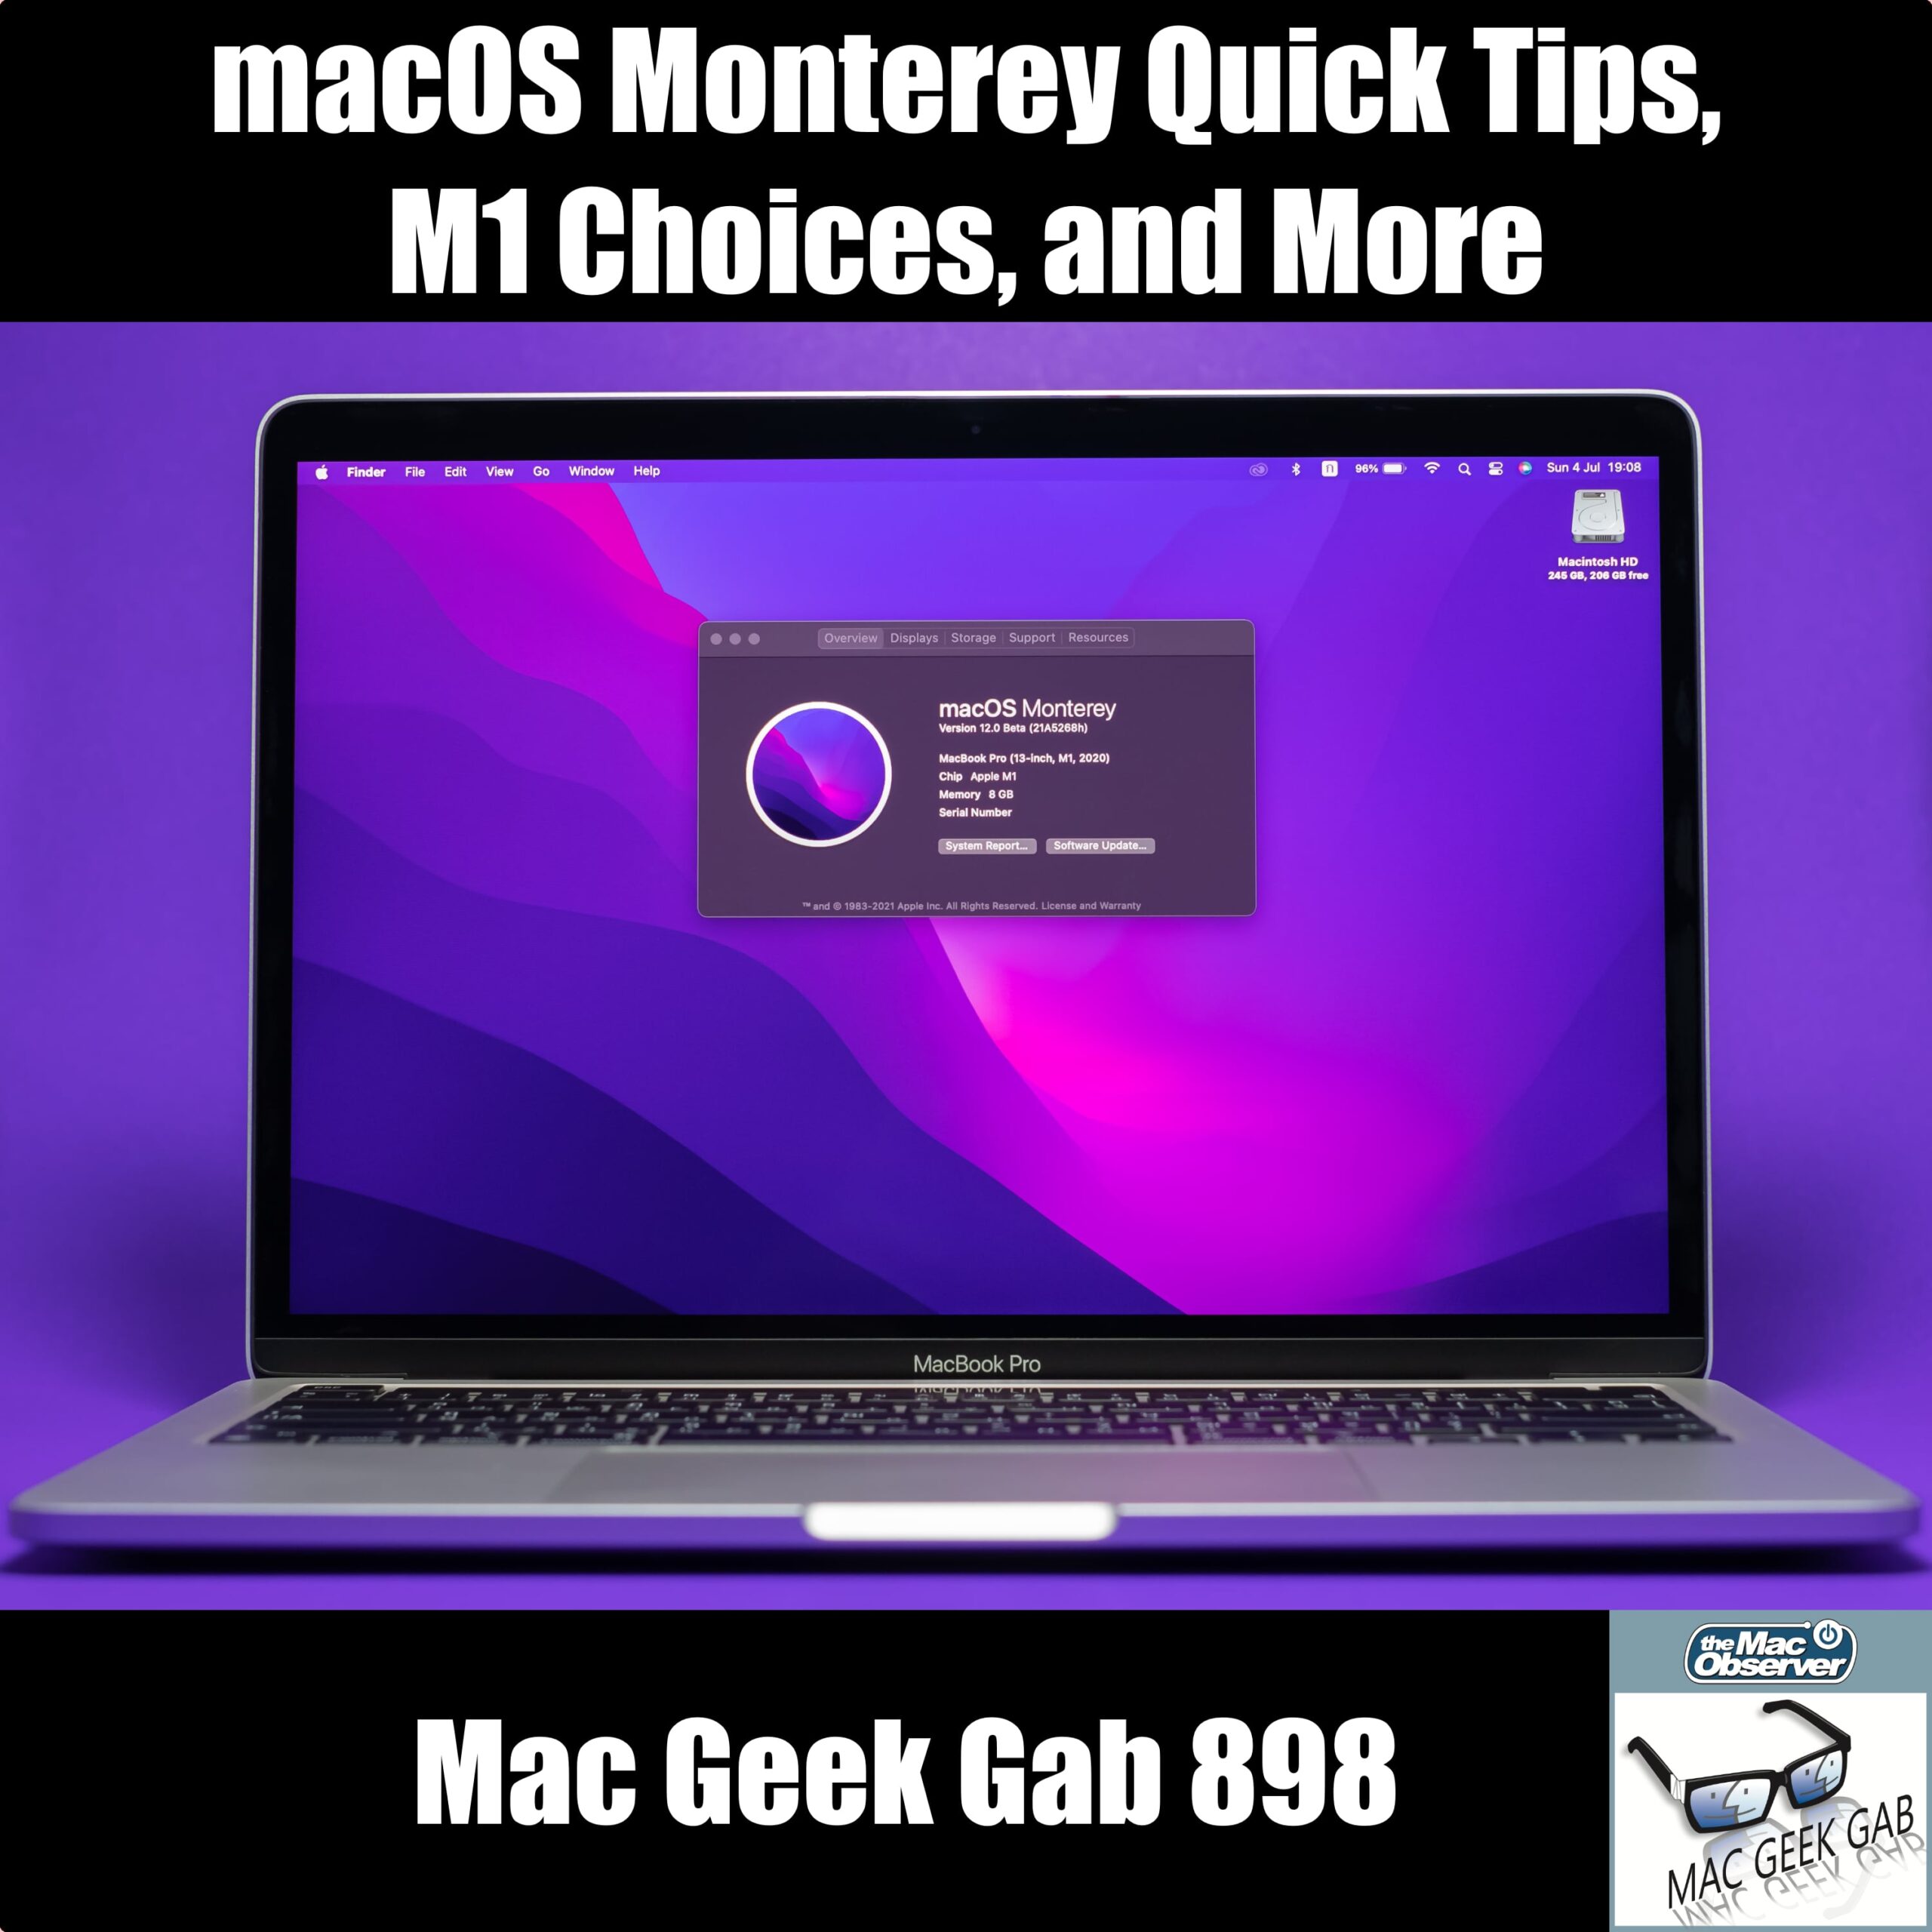 Se han encontrado sugerencias rápidas de macOS Monterey, opciones M1 y cosas interesantes - Mac Geek Gab 898